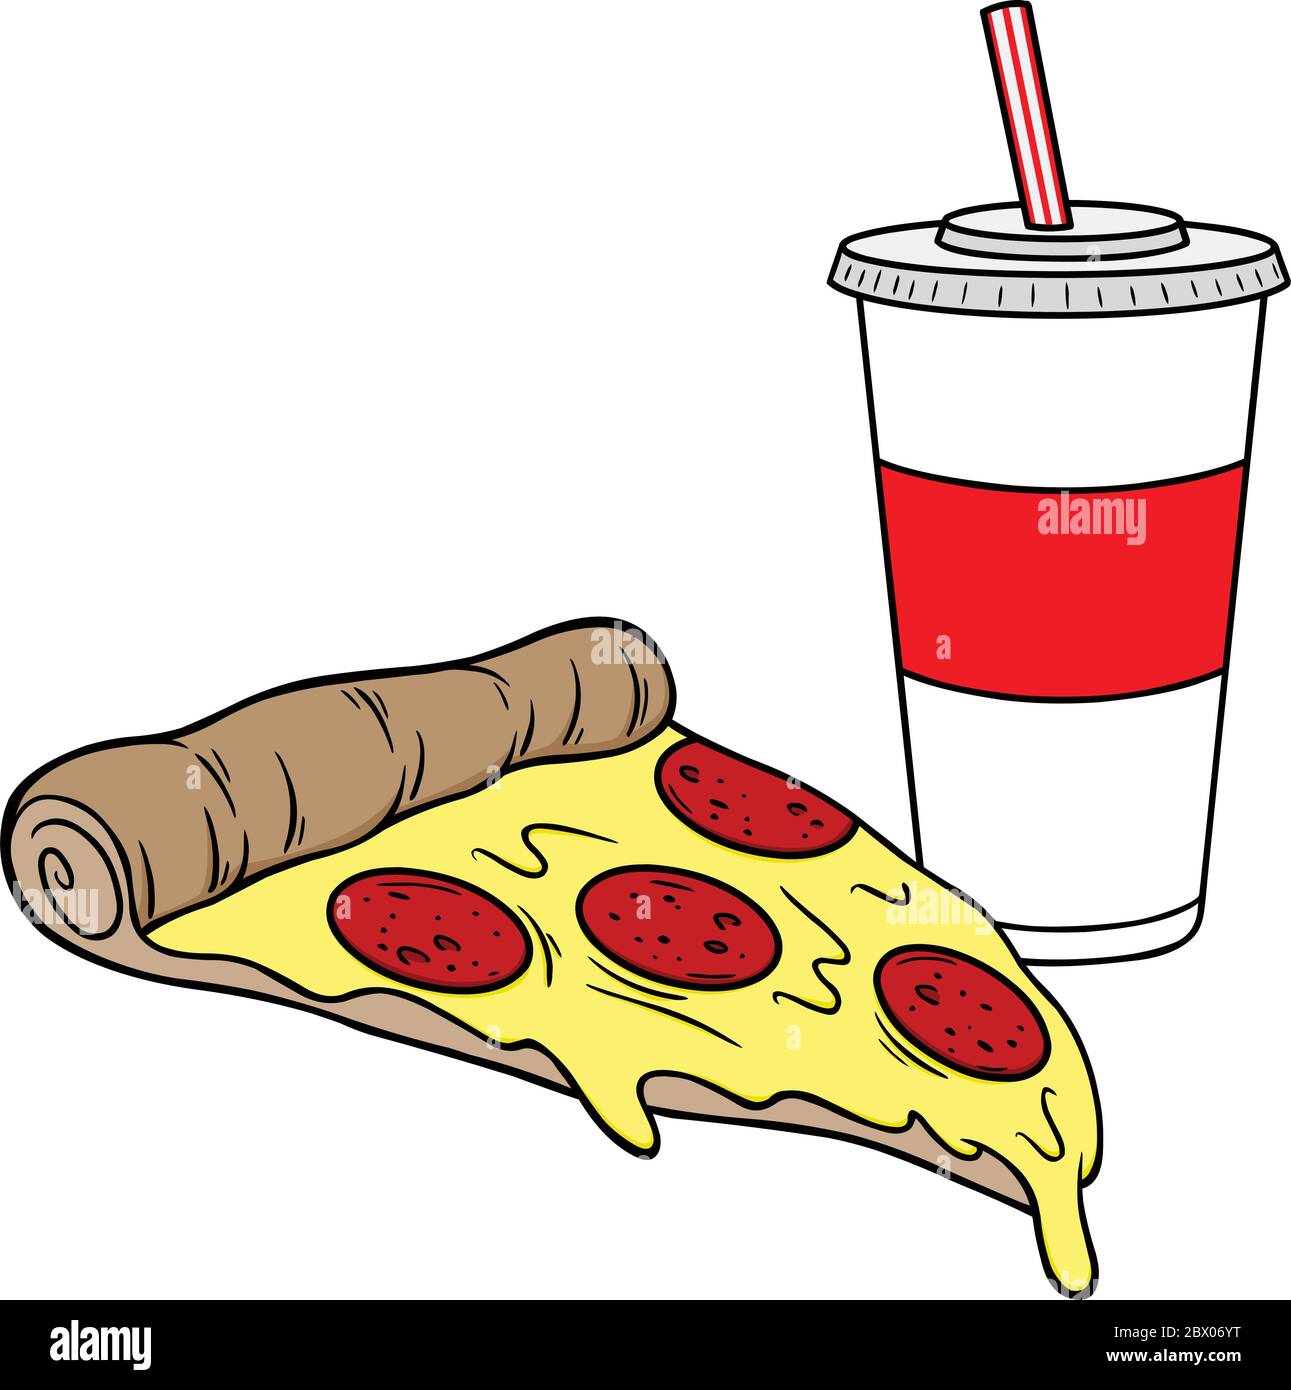 AOTISO Tranche de pizza de dessin animé avec des gouttes de